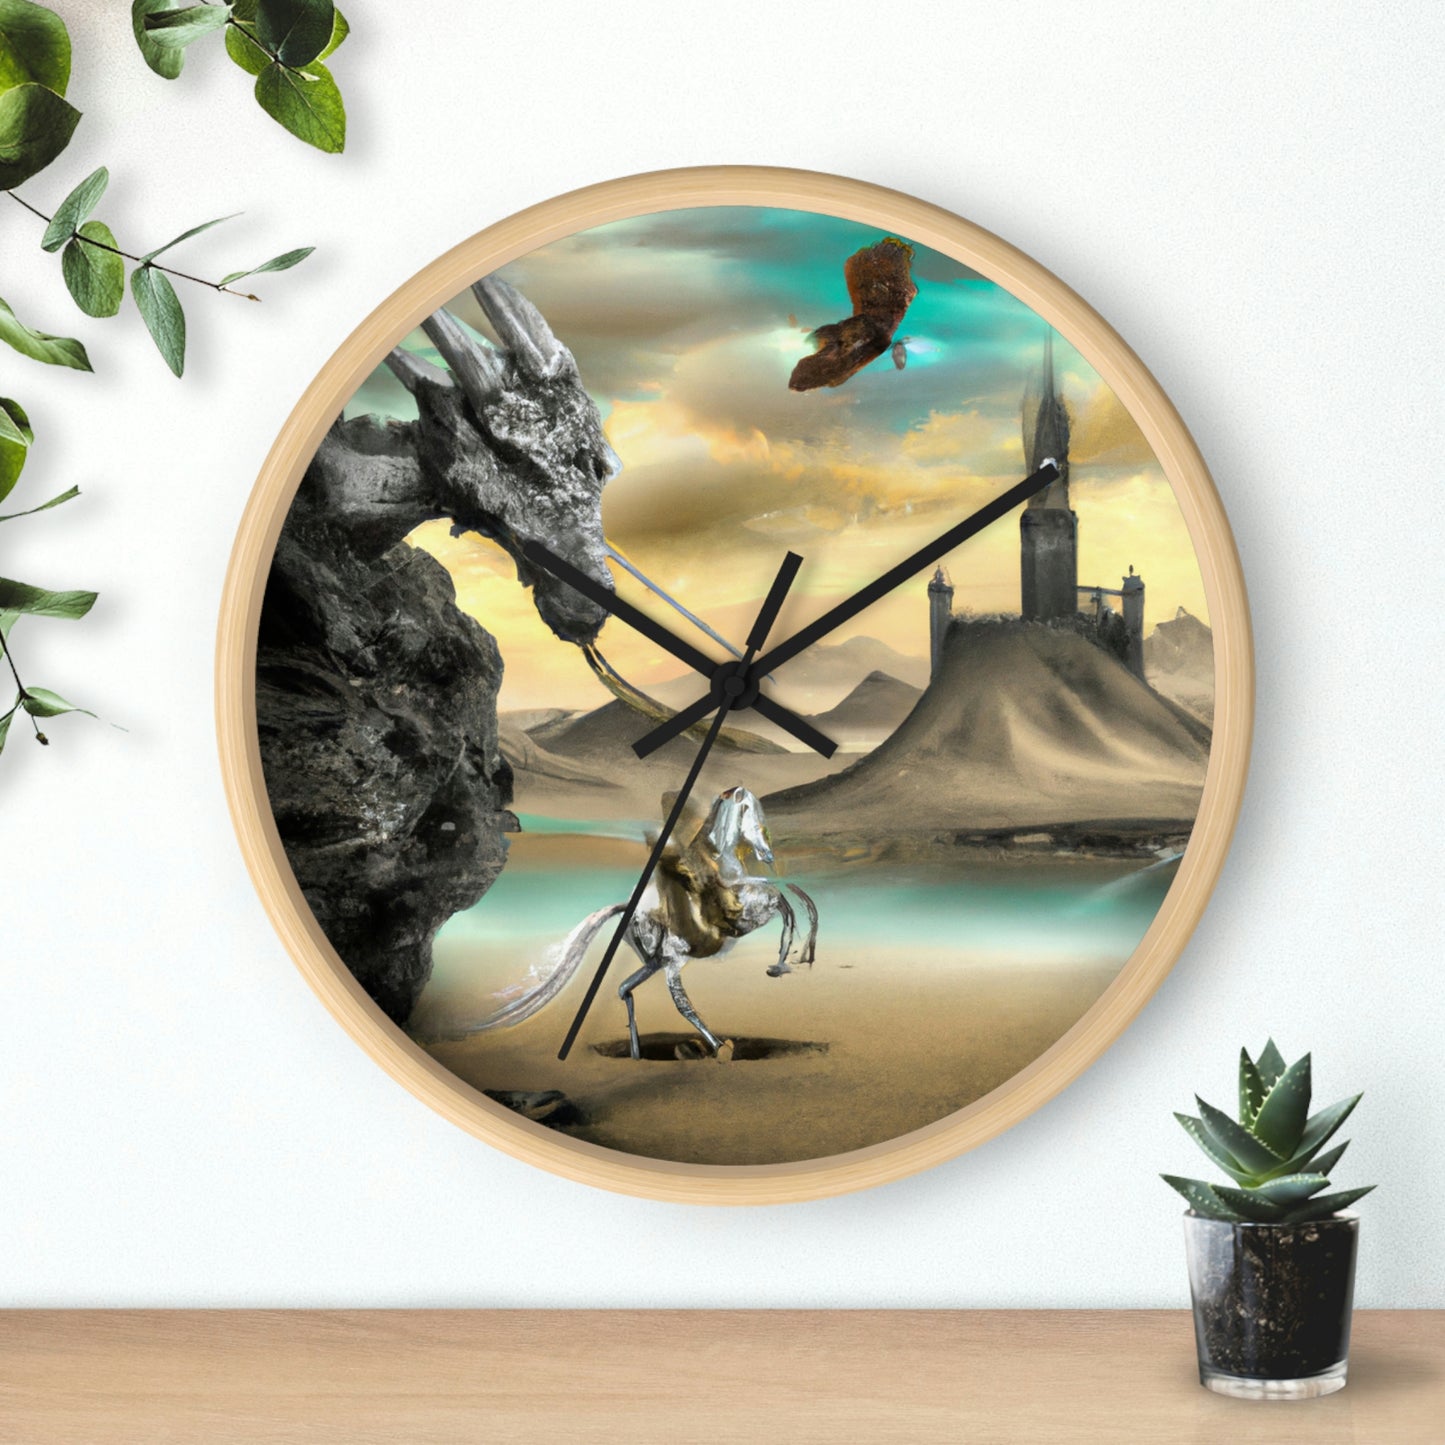 El caballero y el trono del dragón - El reloj de pared alienígena